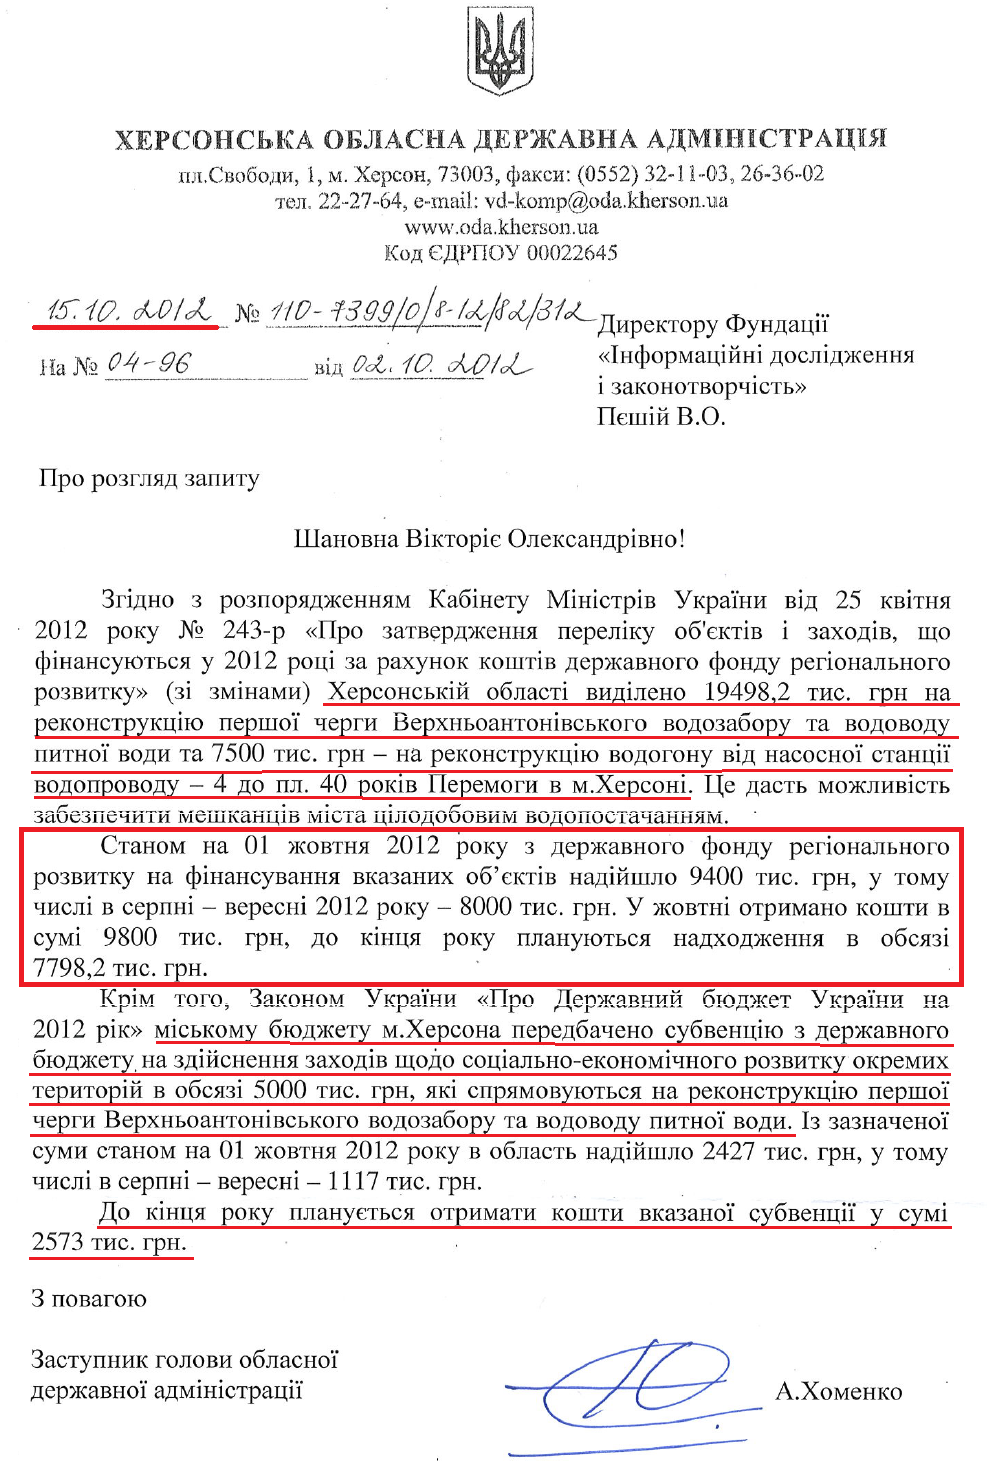 Лист Заступника голови Херсонської ОДА А.Хоменка від 15 жовтня 2012 року